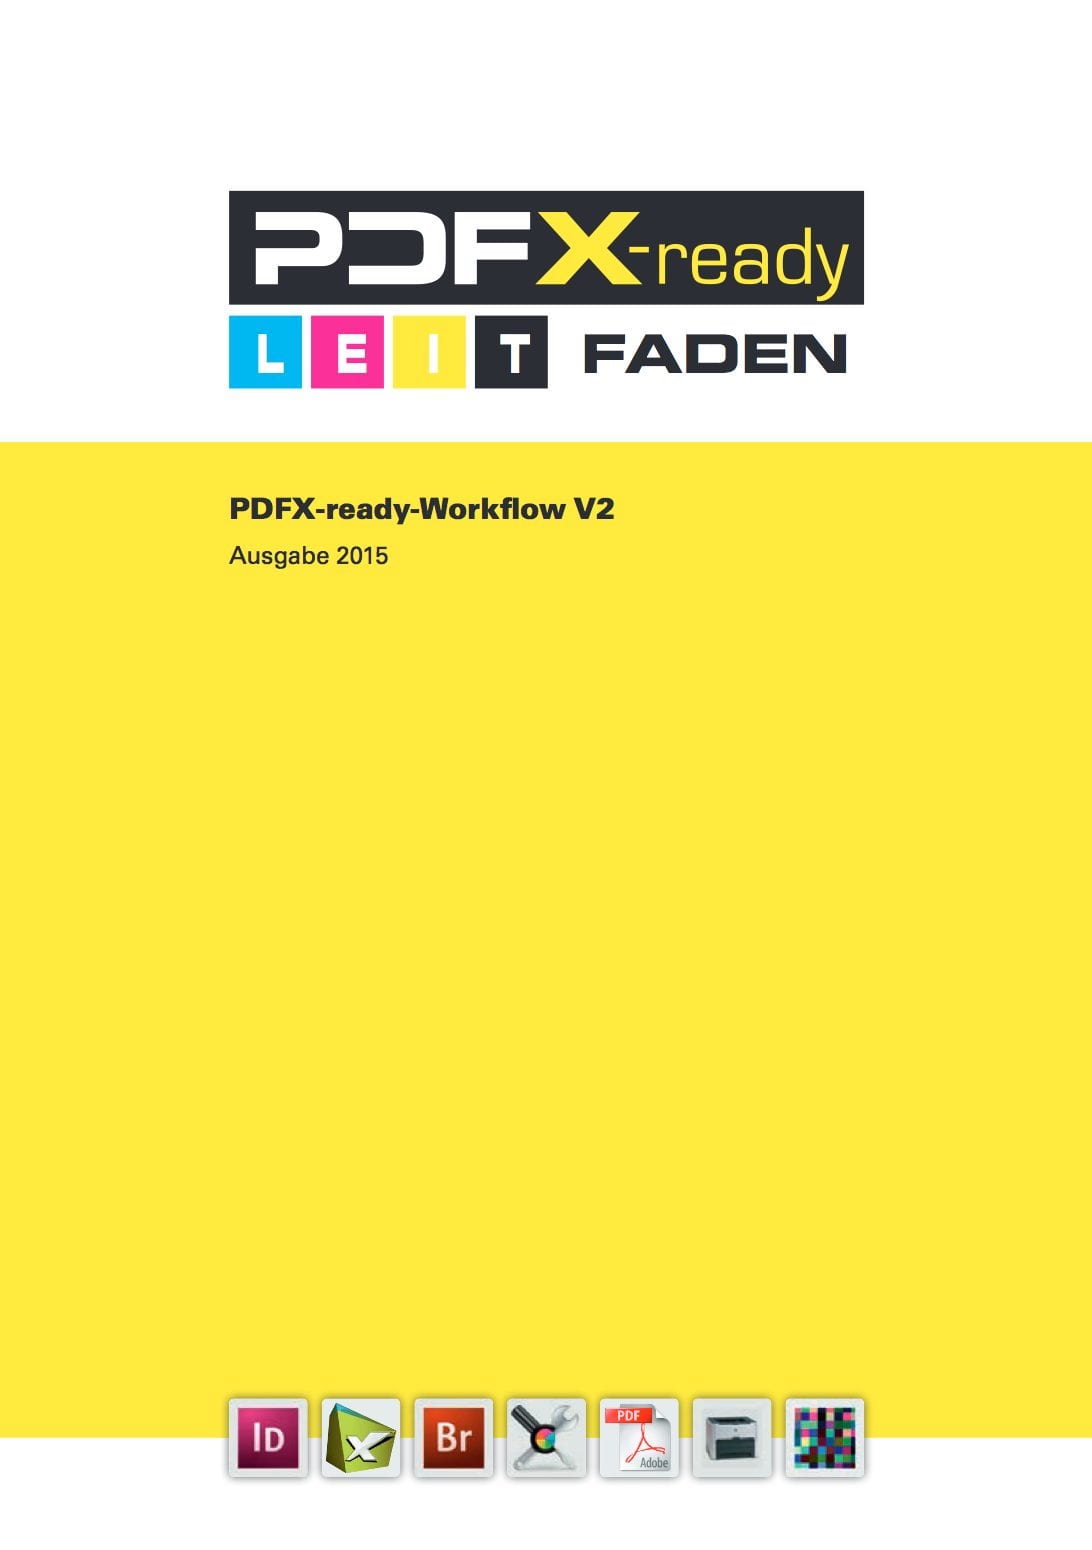 PDFX-ready Guide 2015 Download